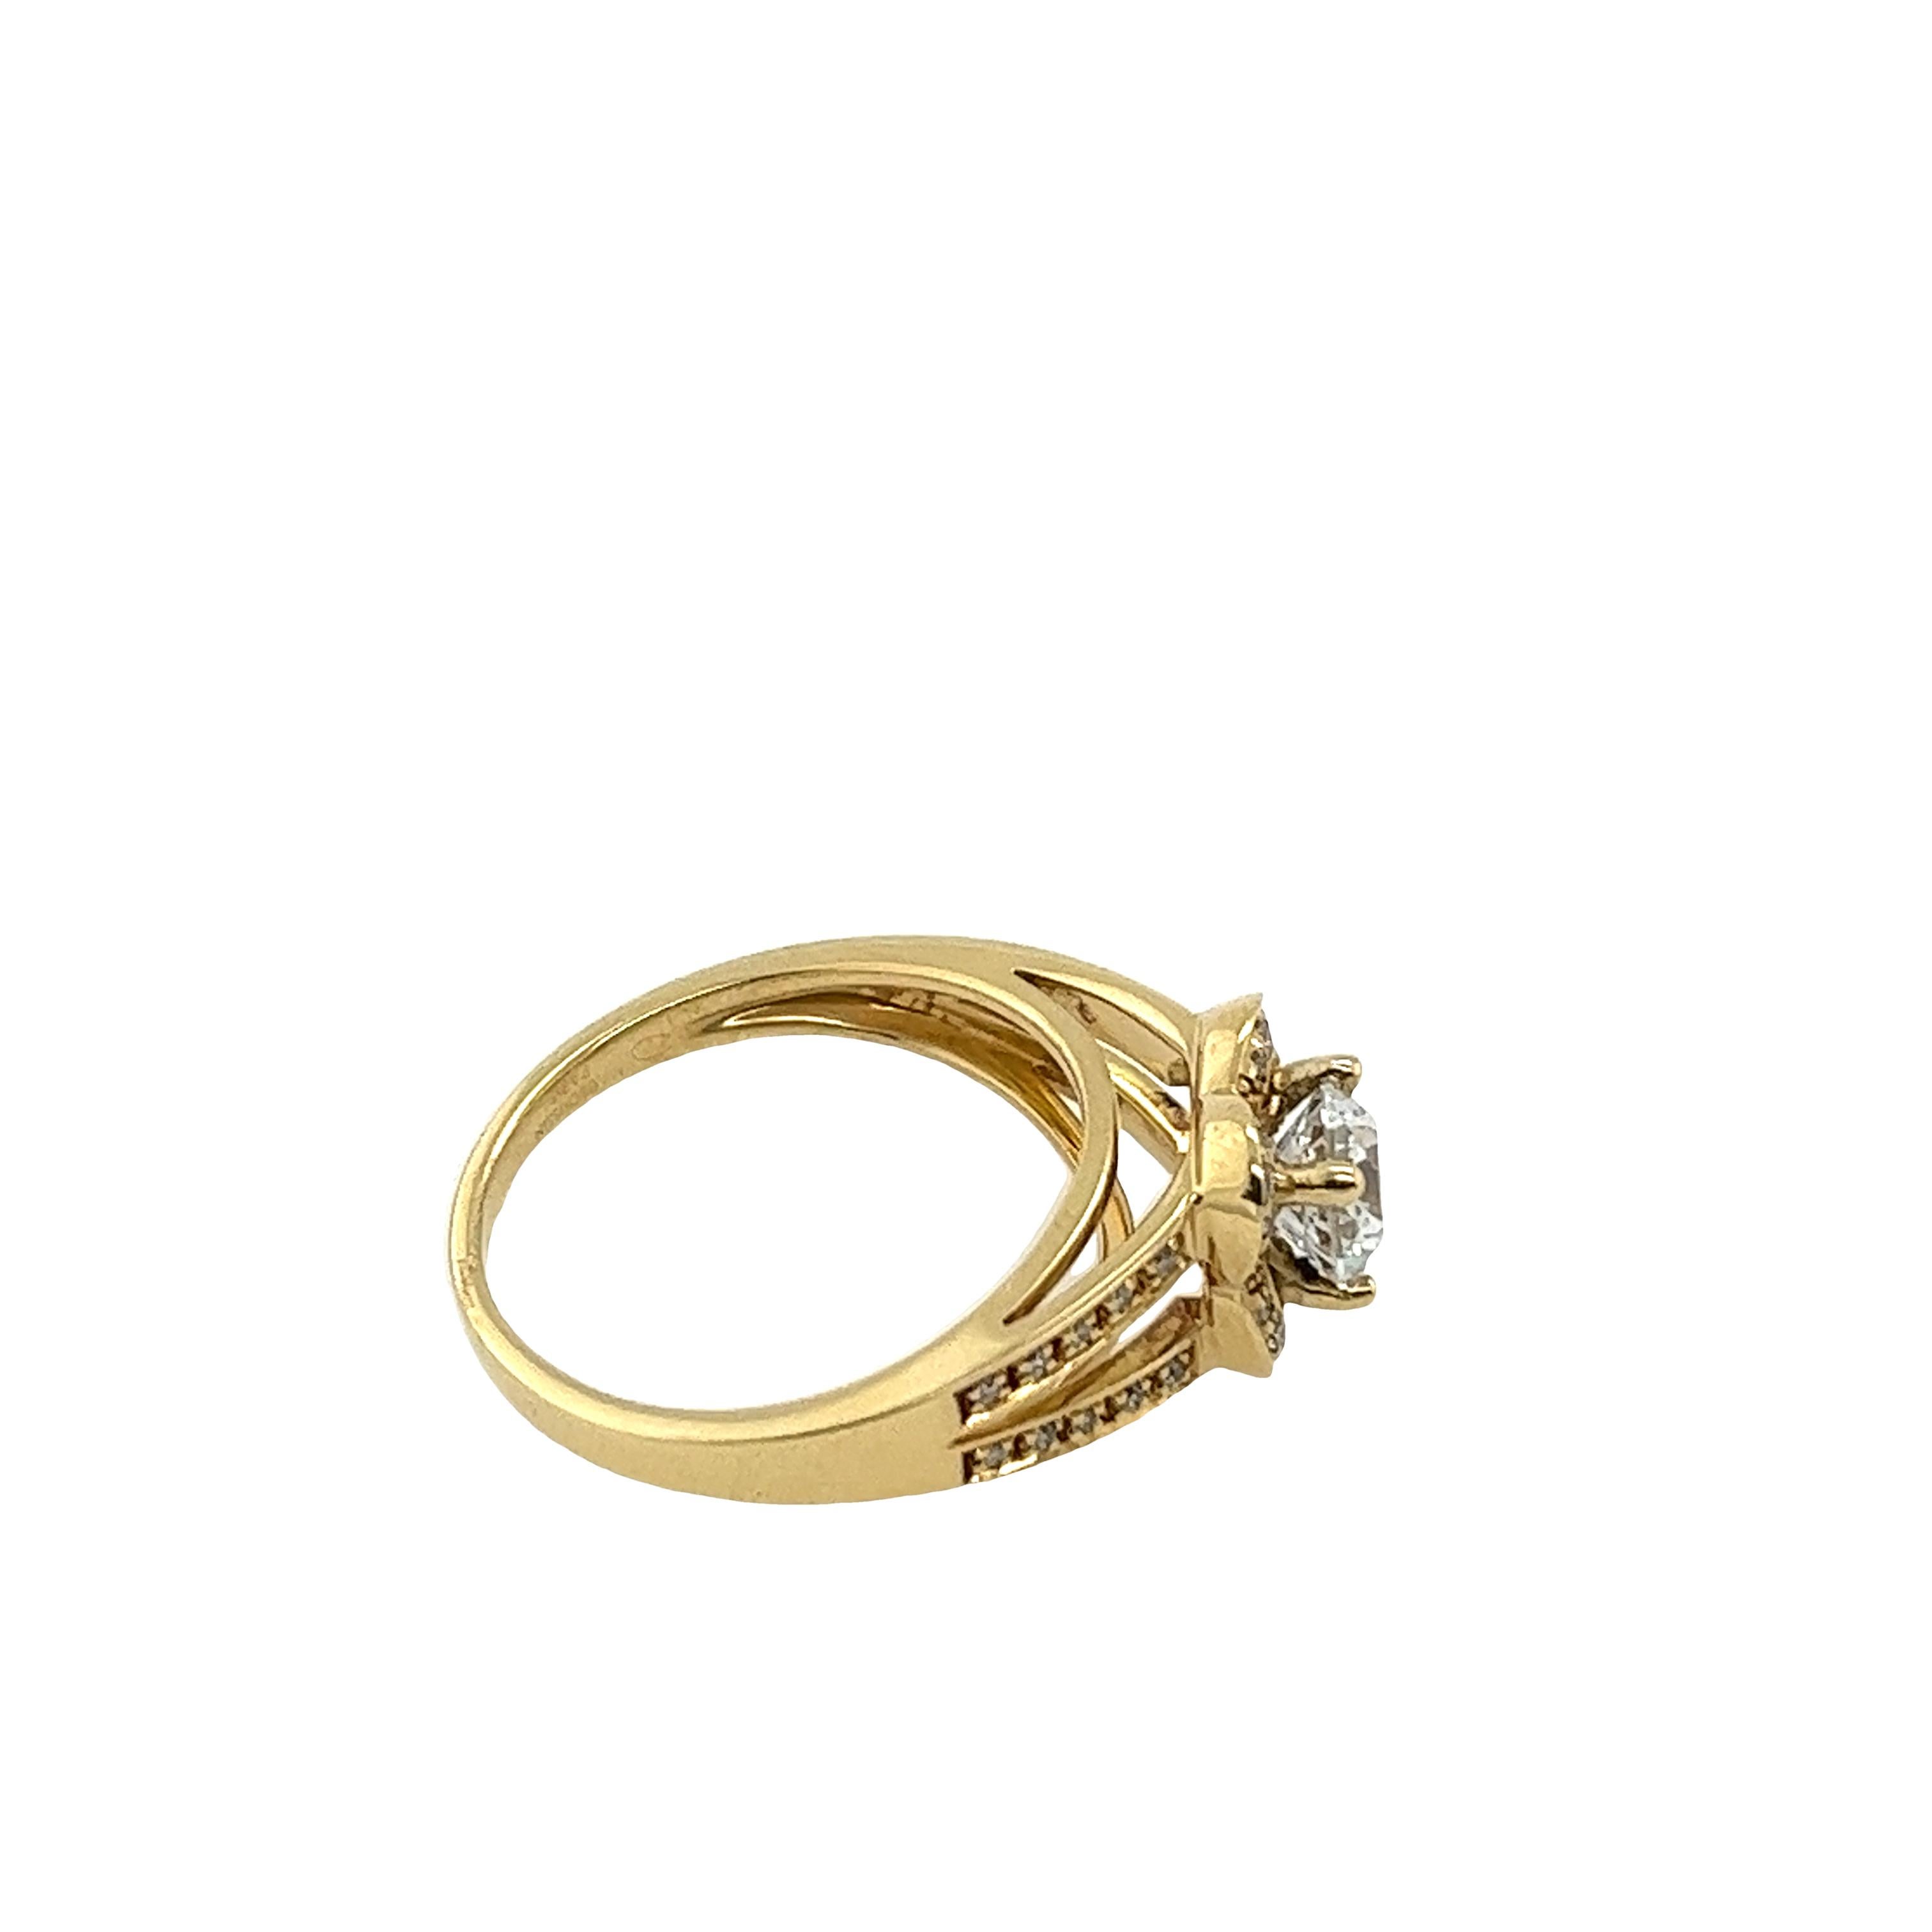 Mauboussin 18ct Yellow Gold Diamond Ring, Set With 0.90ct Gia D/VS1 Diamond 4